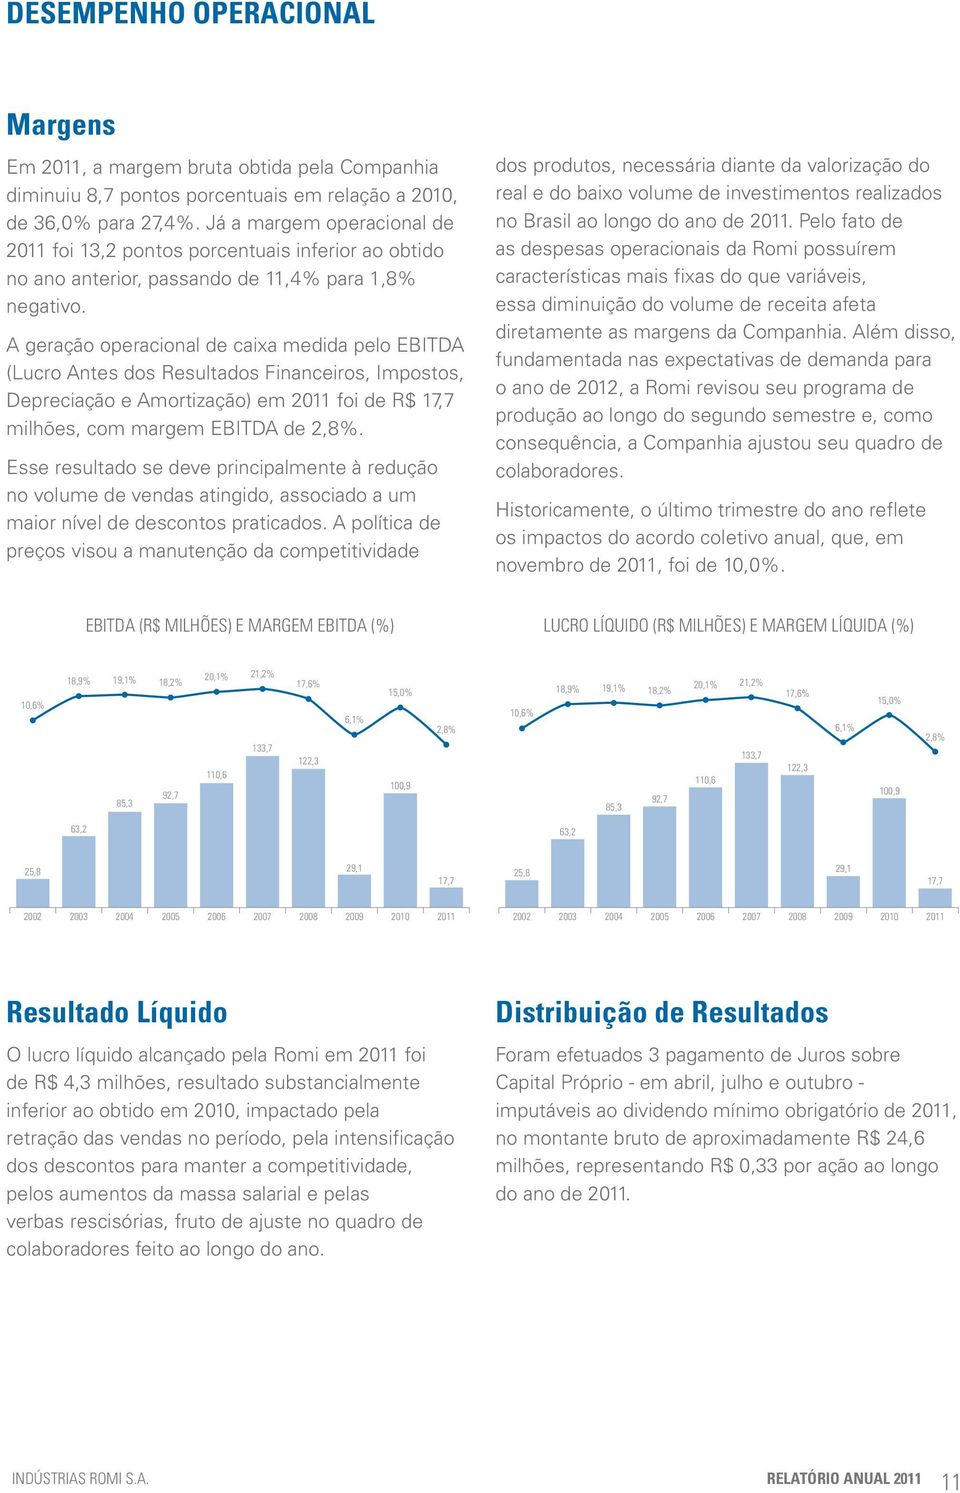 A geração operacional de caixa medida pelo EBITDA (Lucro Antes dos Resultados Financeiros, Impostos, Depreciação e Amortização) em 2011 foi de R$ 17,7 milhões, com margem EBITDA de 2,8%.